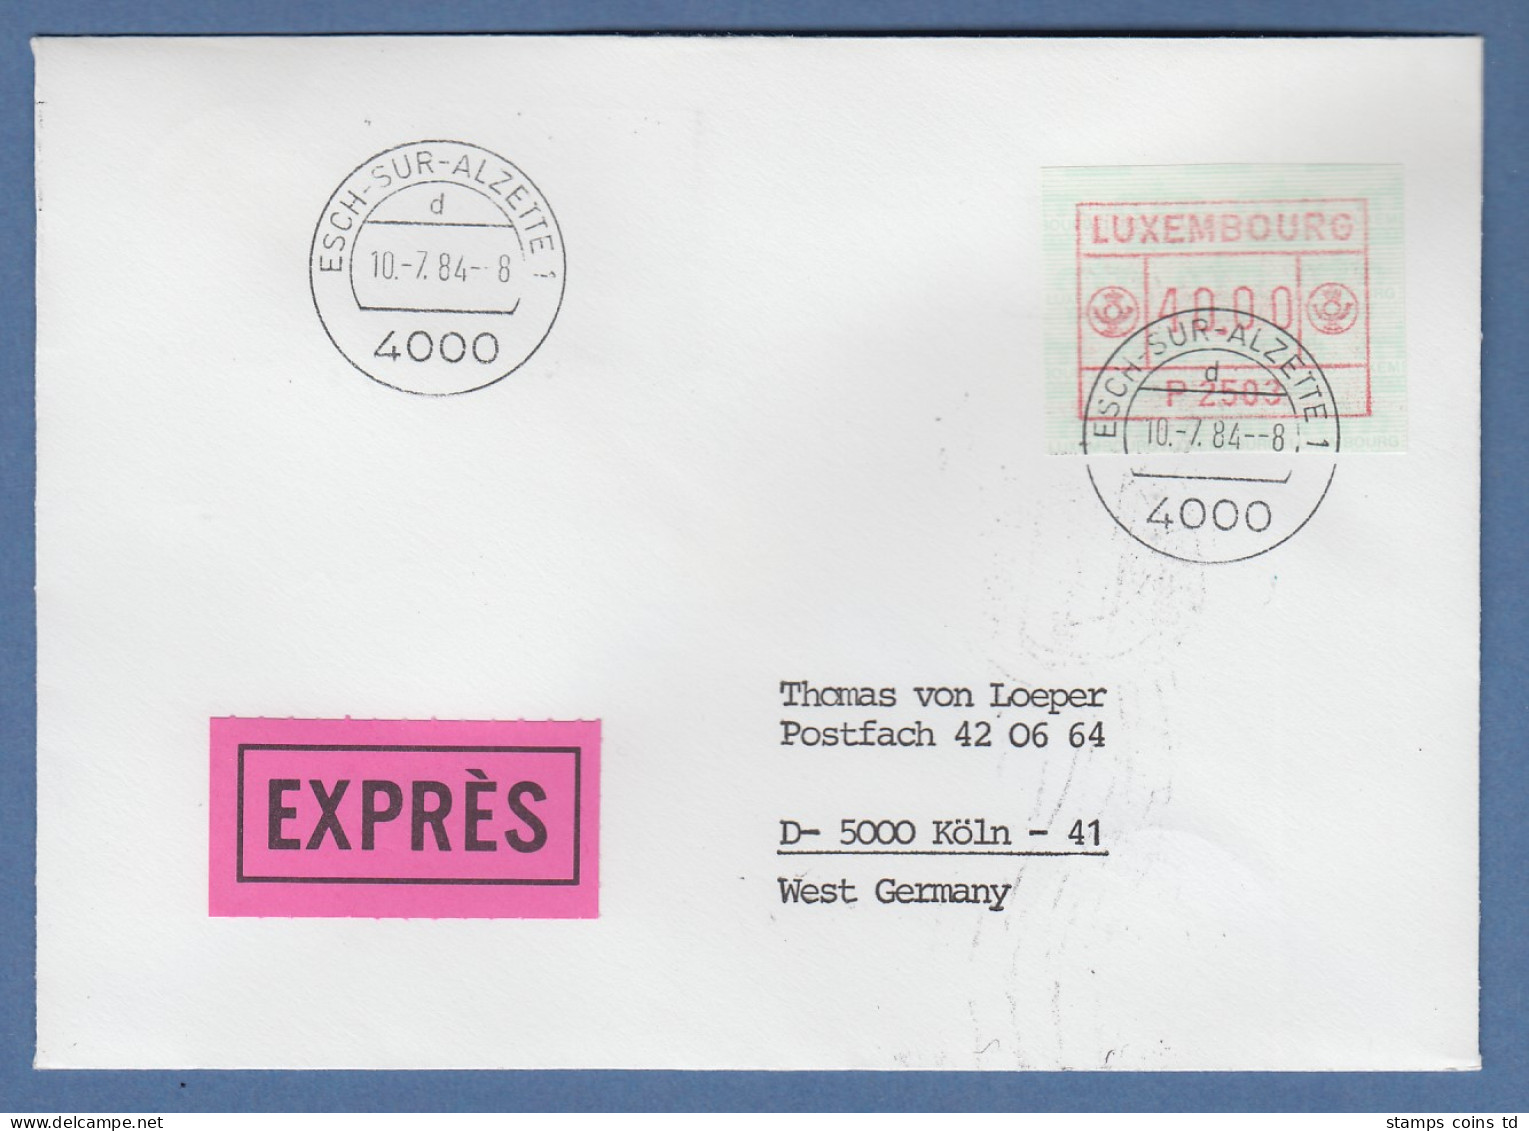 Luxemburg ATM P2503 Hoher Wert 40,00 Auf Exprès-FDC Nach Köln, 10.7.84 - Postage Labels